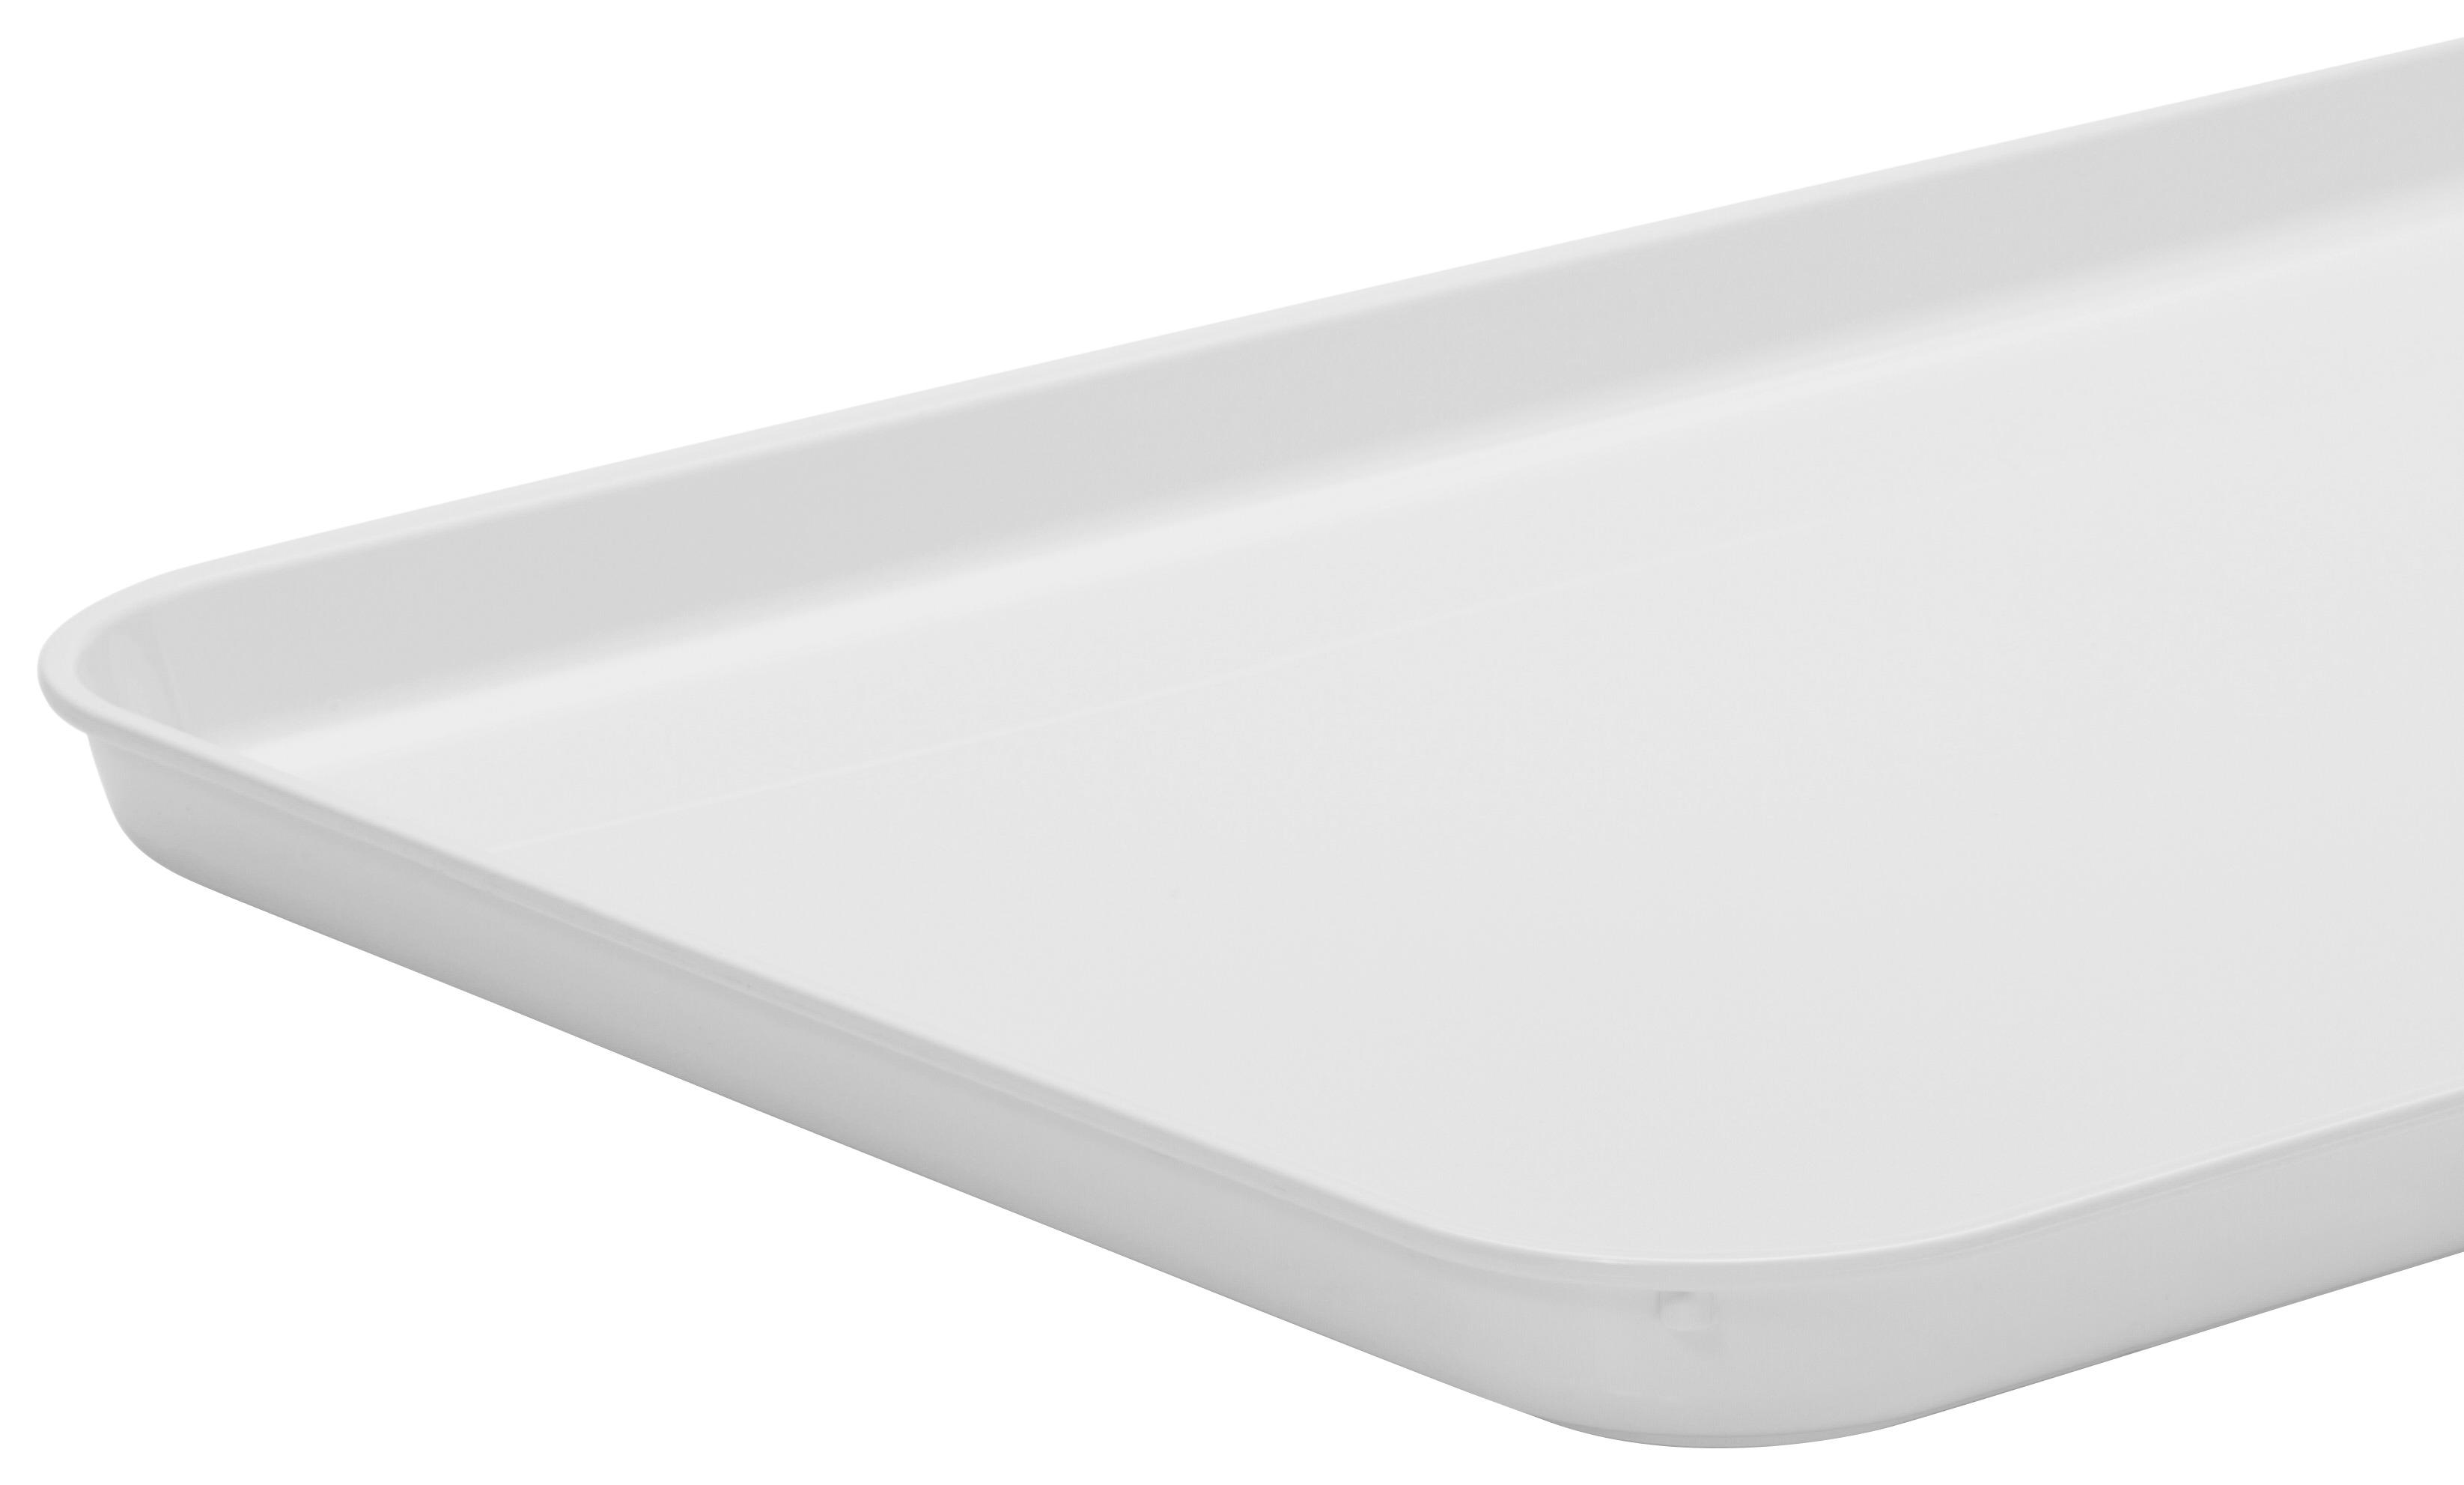 Tablett aus Kunststoff Britta 41x30 cm, Weiß - Weiß, KONVENTIONELL, Kunststoff (41/30/2cm)